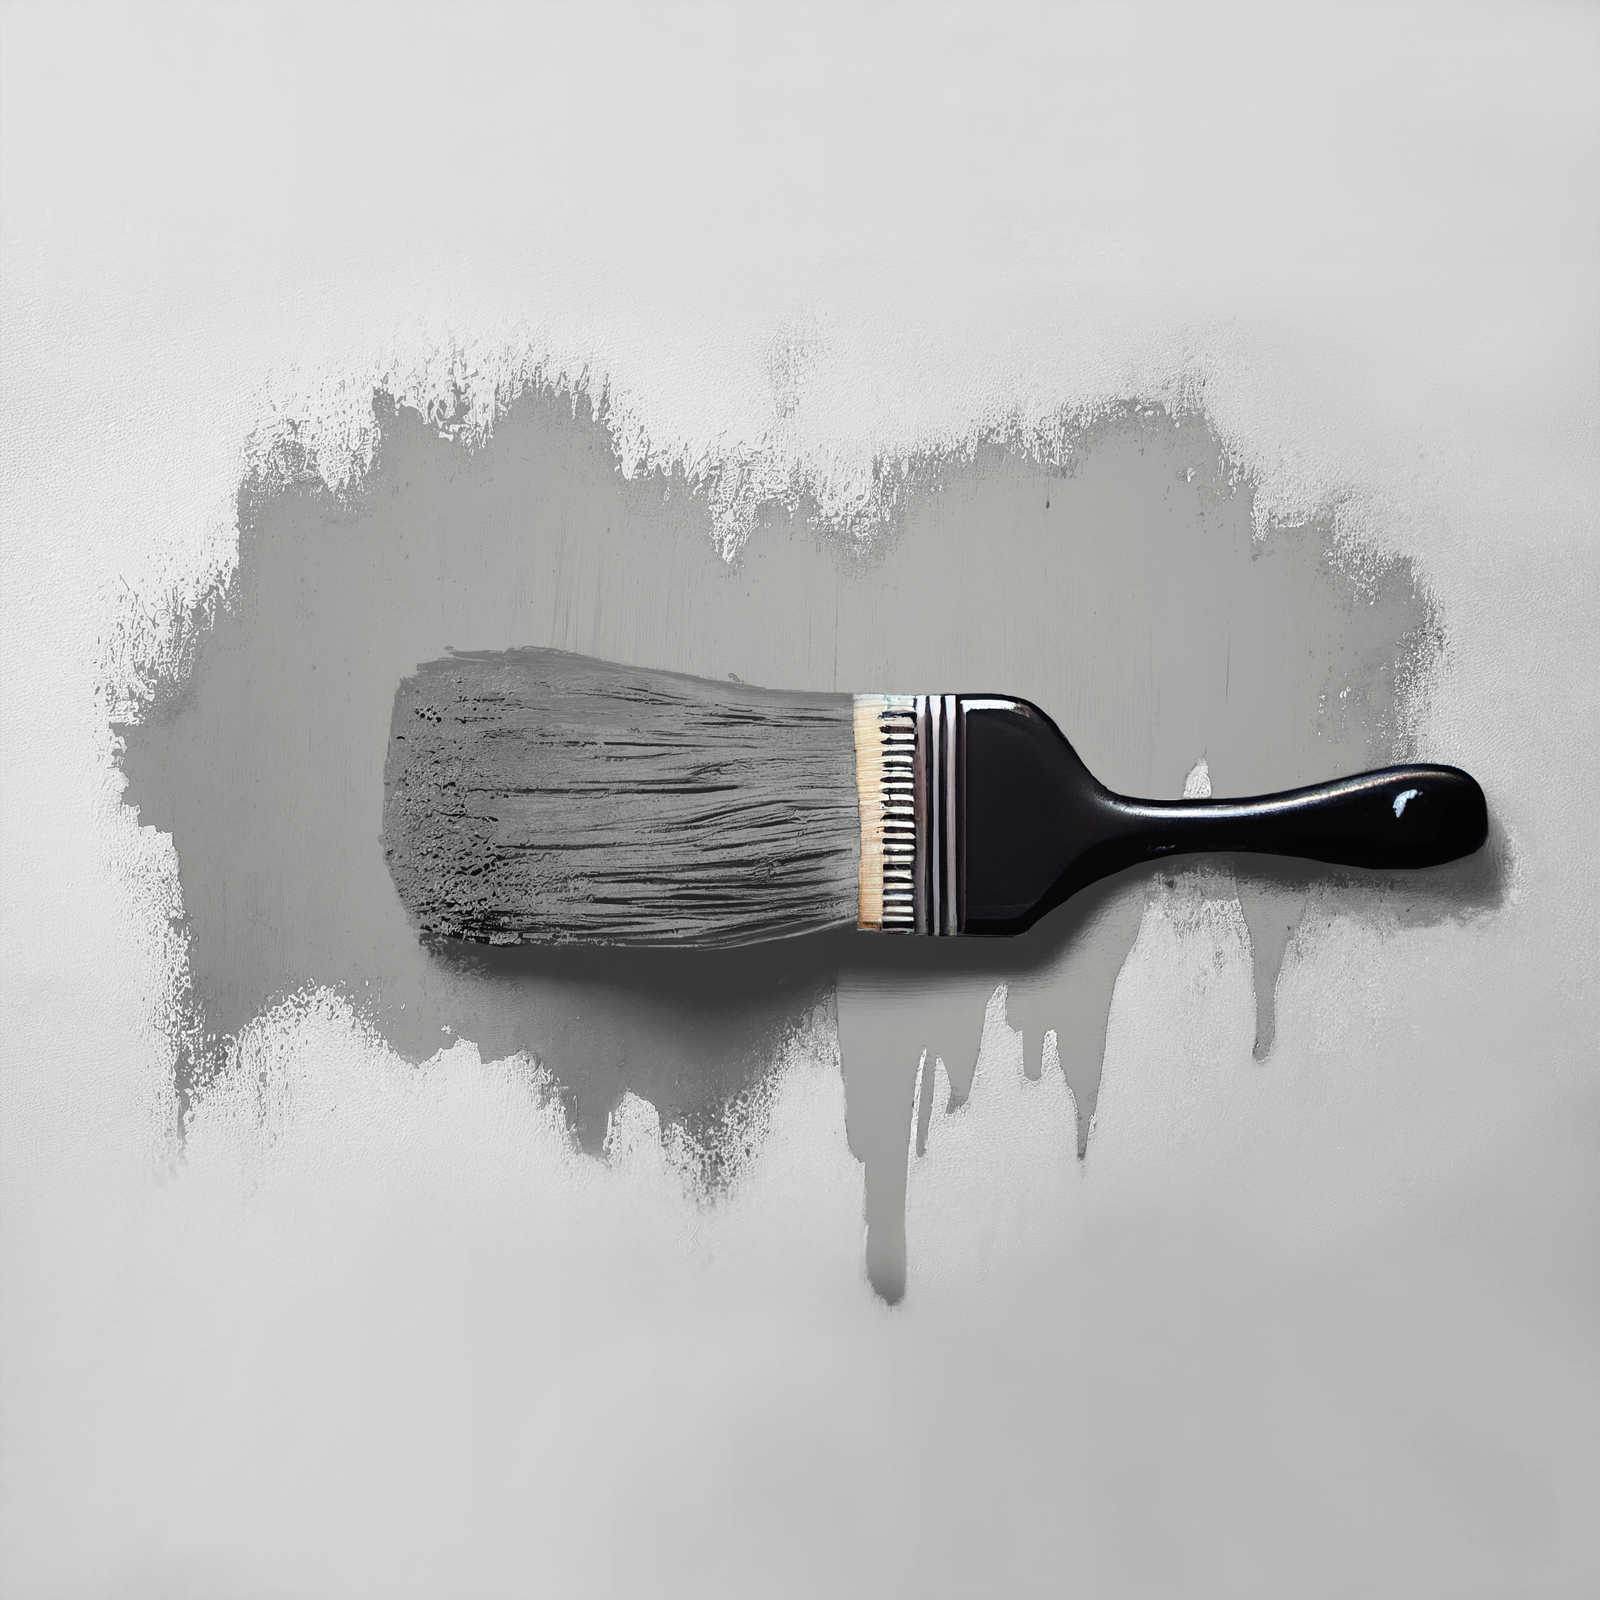             Pittura murale TCK1011 »Attractive Anchovies« in grigio argento caldo – 5,0 litri
        